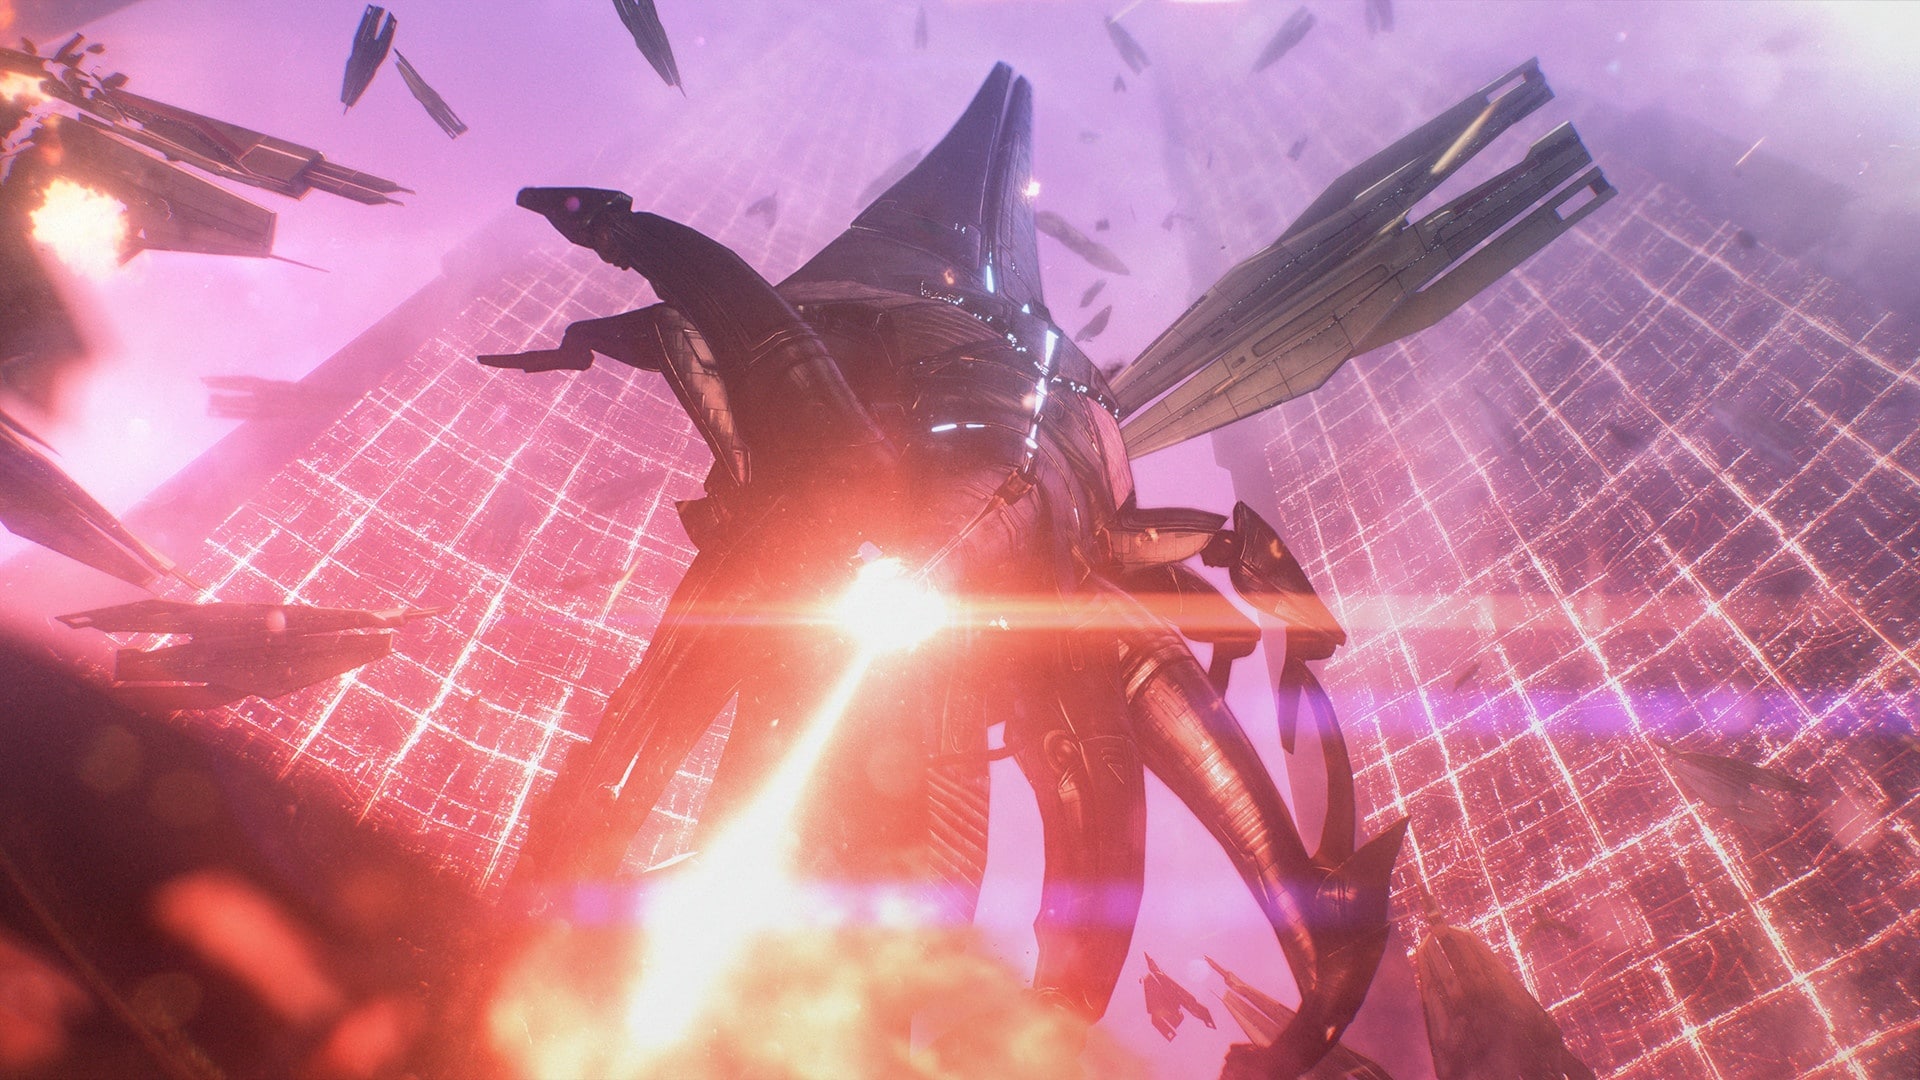 (La toute dernière brique sera les Moissonneurs (image tirée de Mass Effect : Legendary Edition).)